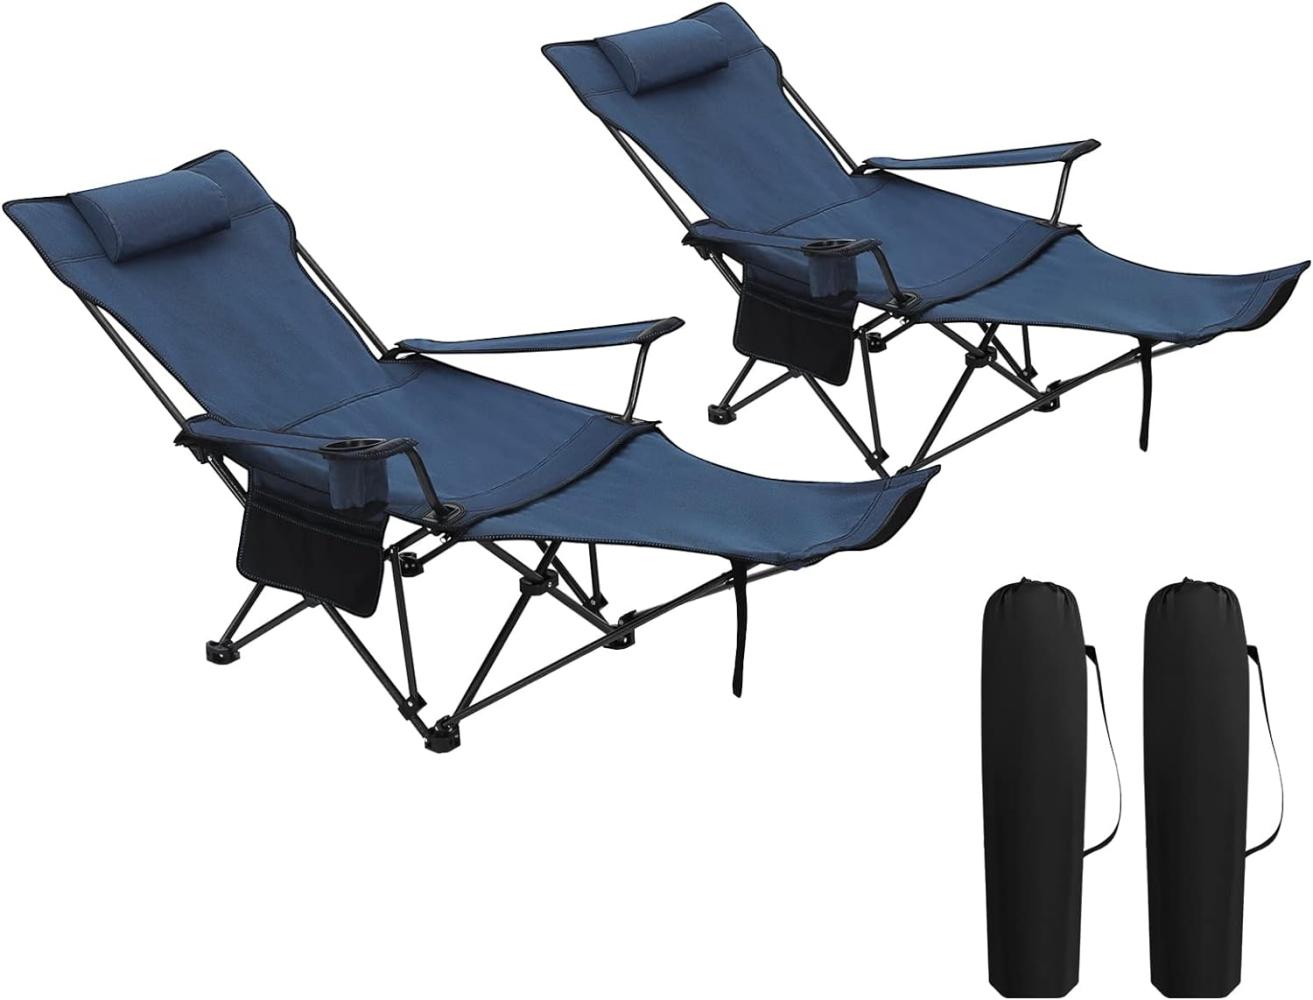 WOLTU 2er Set Campingstuhl klappbarer, Klappstuhl Liegestuhl für Outdoor, Angelstuhl Sonnenstuhl ultraleichter mit Armlehnen und Getränkehalter Blau CPS8148bl-2 Bild 1